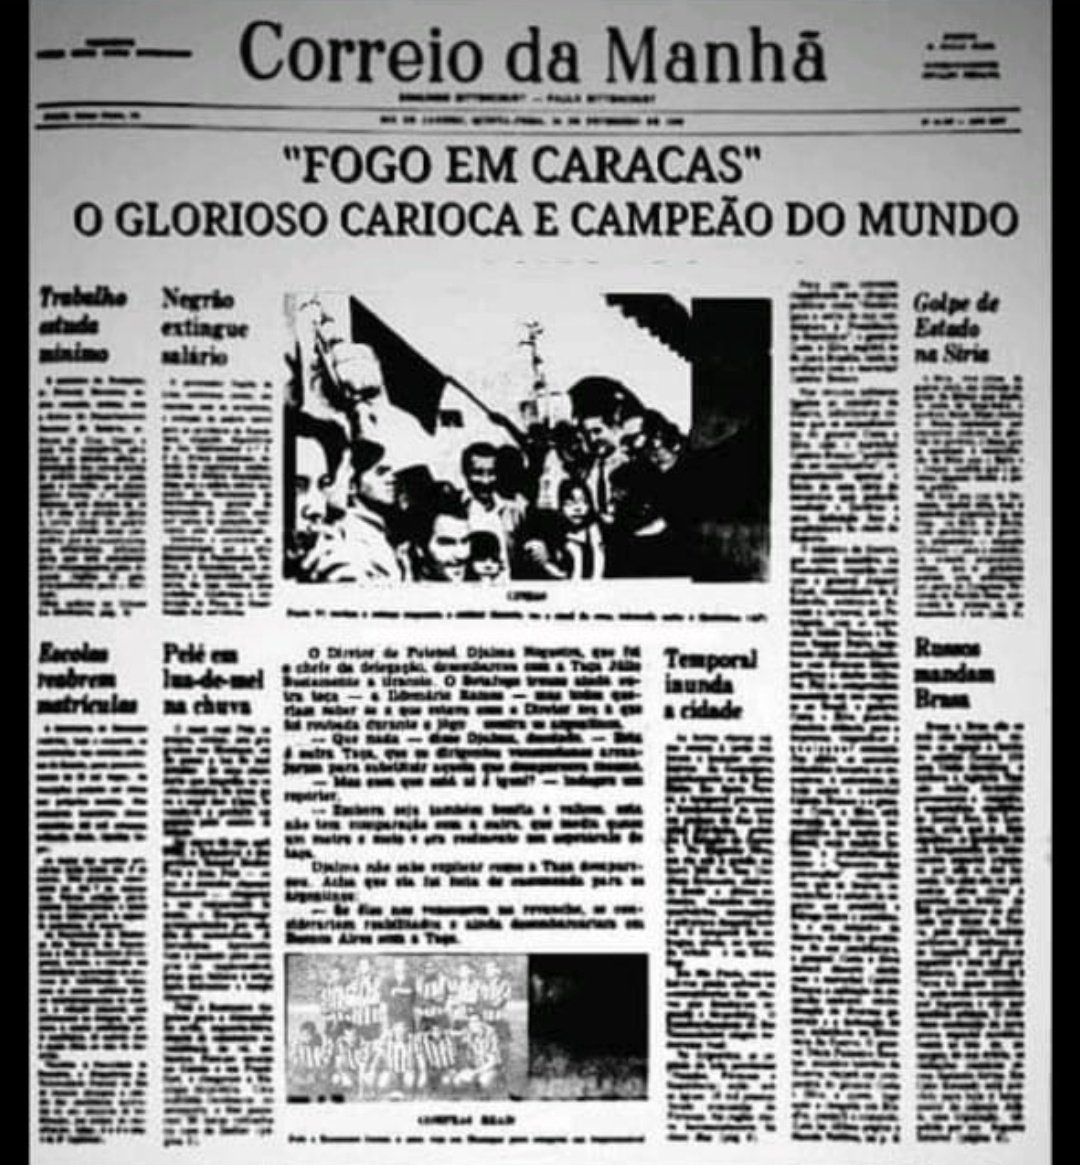 O Botafogo publicou três títulos mundiais em seu site oficial no início de abril. As conquistas são da Pequena Taça do Mundo de 1967, 1968 e 1970, torneio triangular sediado em Caracas, na Venezuela, que agora passam a ser considerados pelo Glorioso desta forma. O clube estuda ir à Fifa pelo reconhecimento das conquistas.